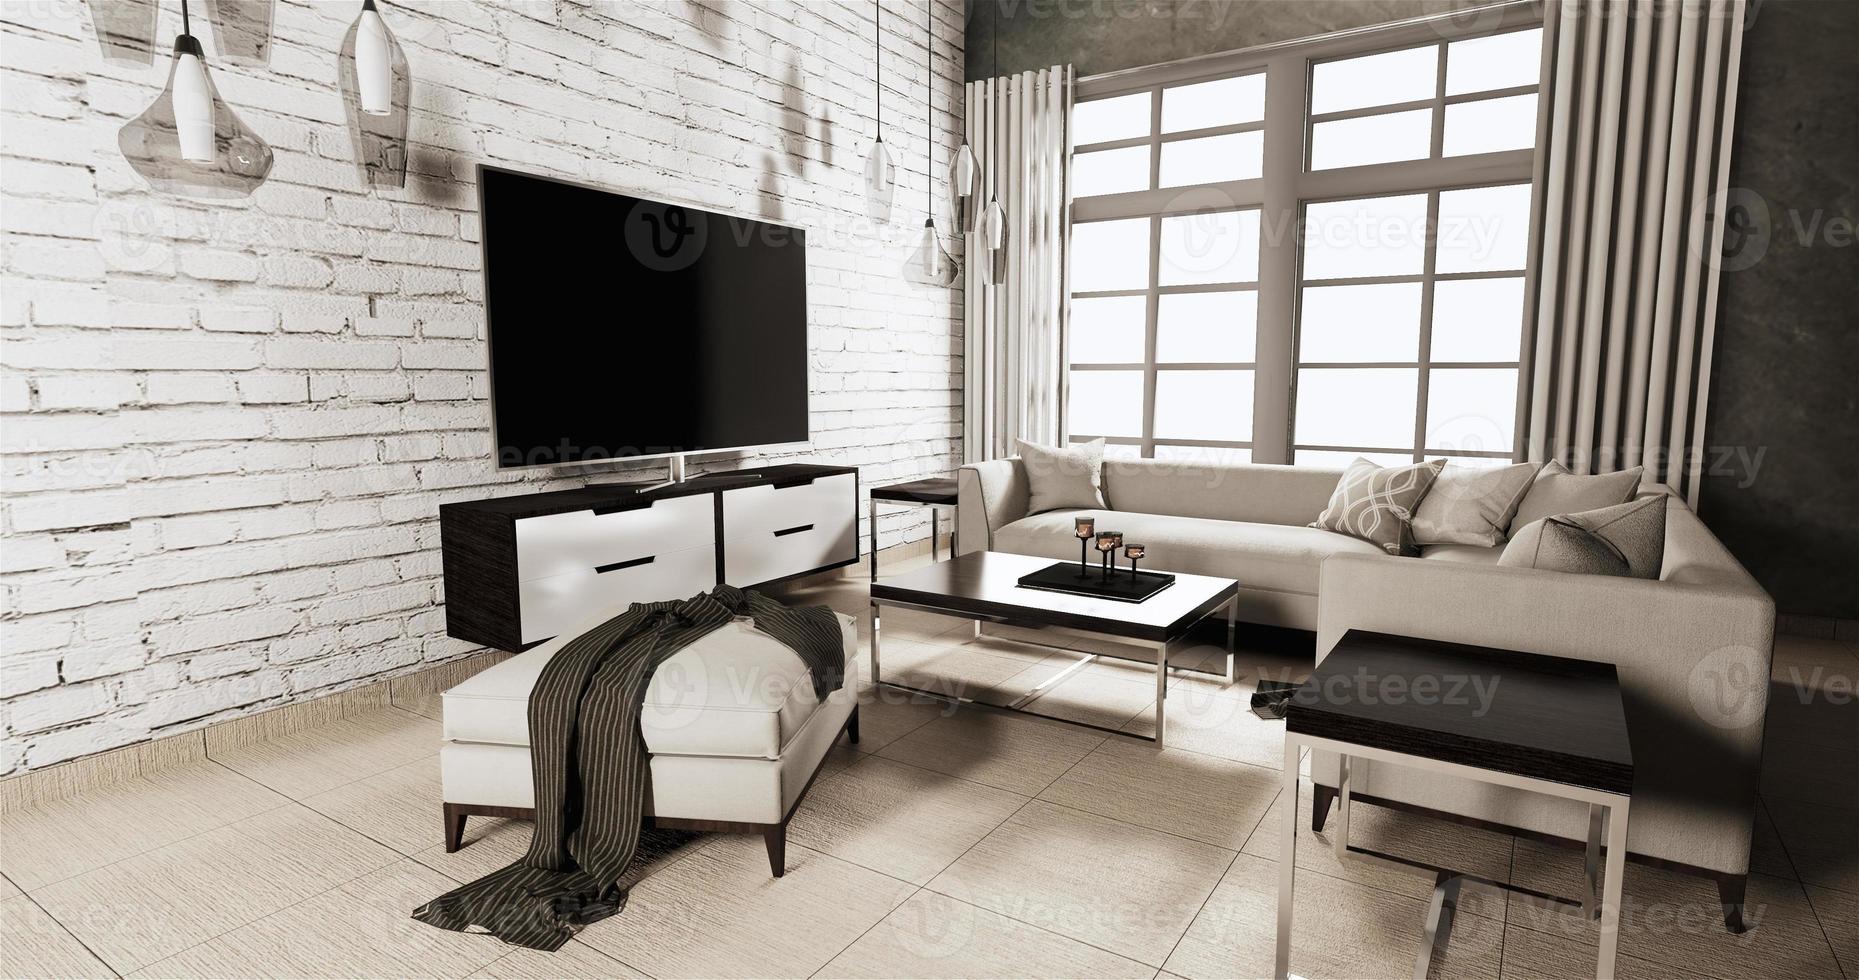 smart tv su mobile in soggiorno in stile loft con muro di mattoni bianchi su pavimento in legno e poltrona divano.3d rendering foto